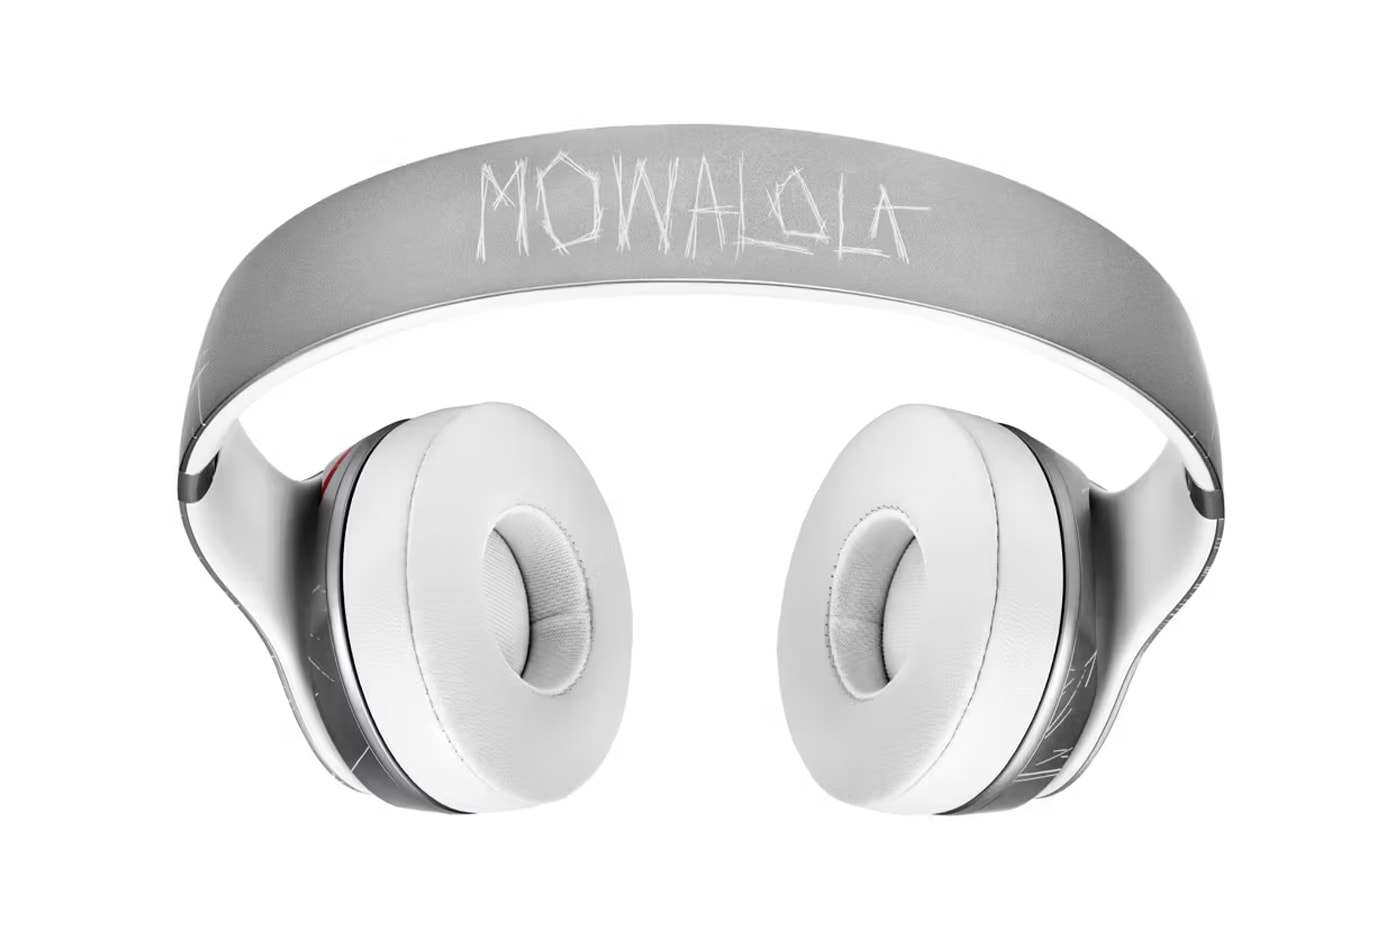 ビーツが気鋭ブランド モワローラとのコラボヘッドフォンを発売 Mowalola Beats Solo3 Wireless New Collaboration bluetooth headphones september 21 launch details us uk canada price london fashion designer